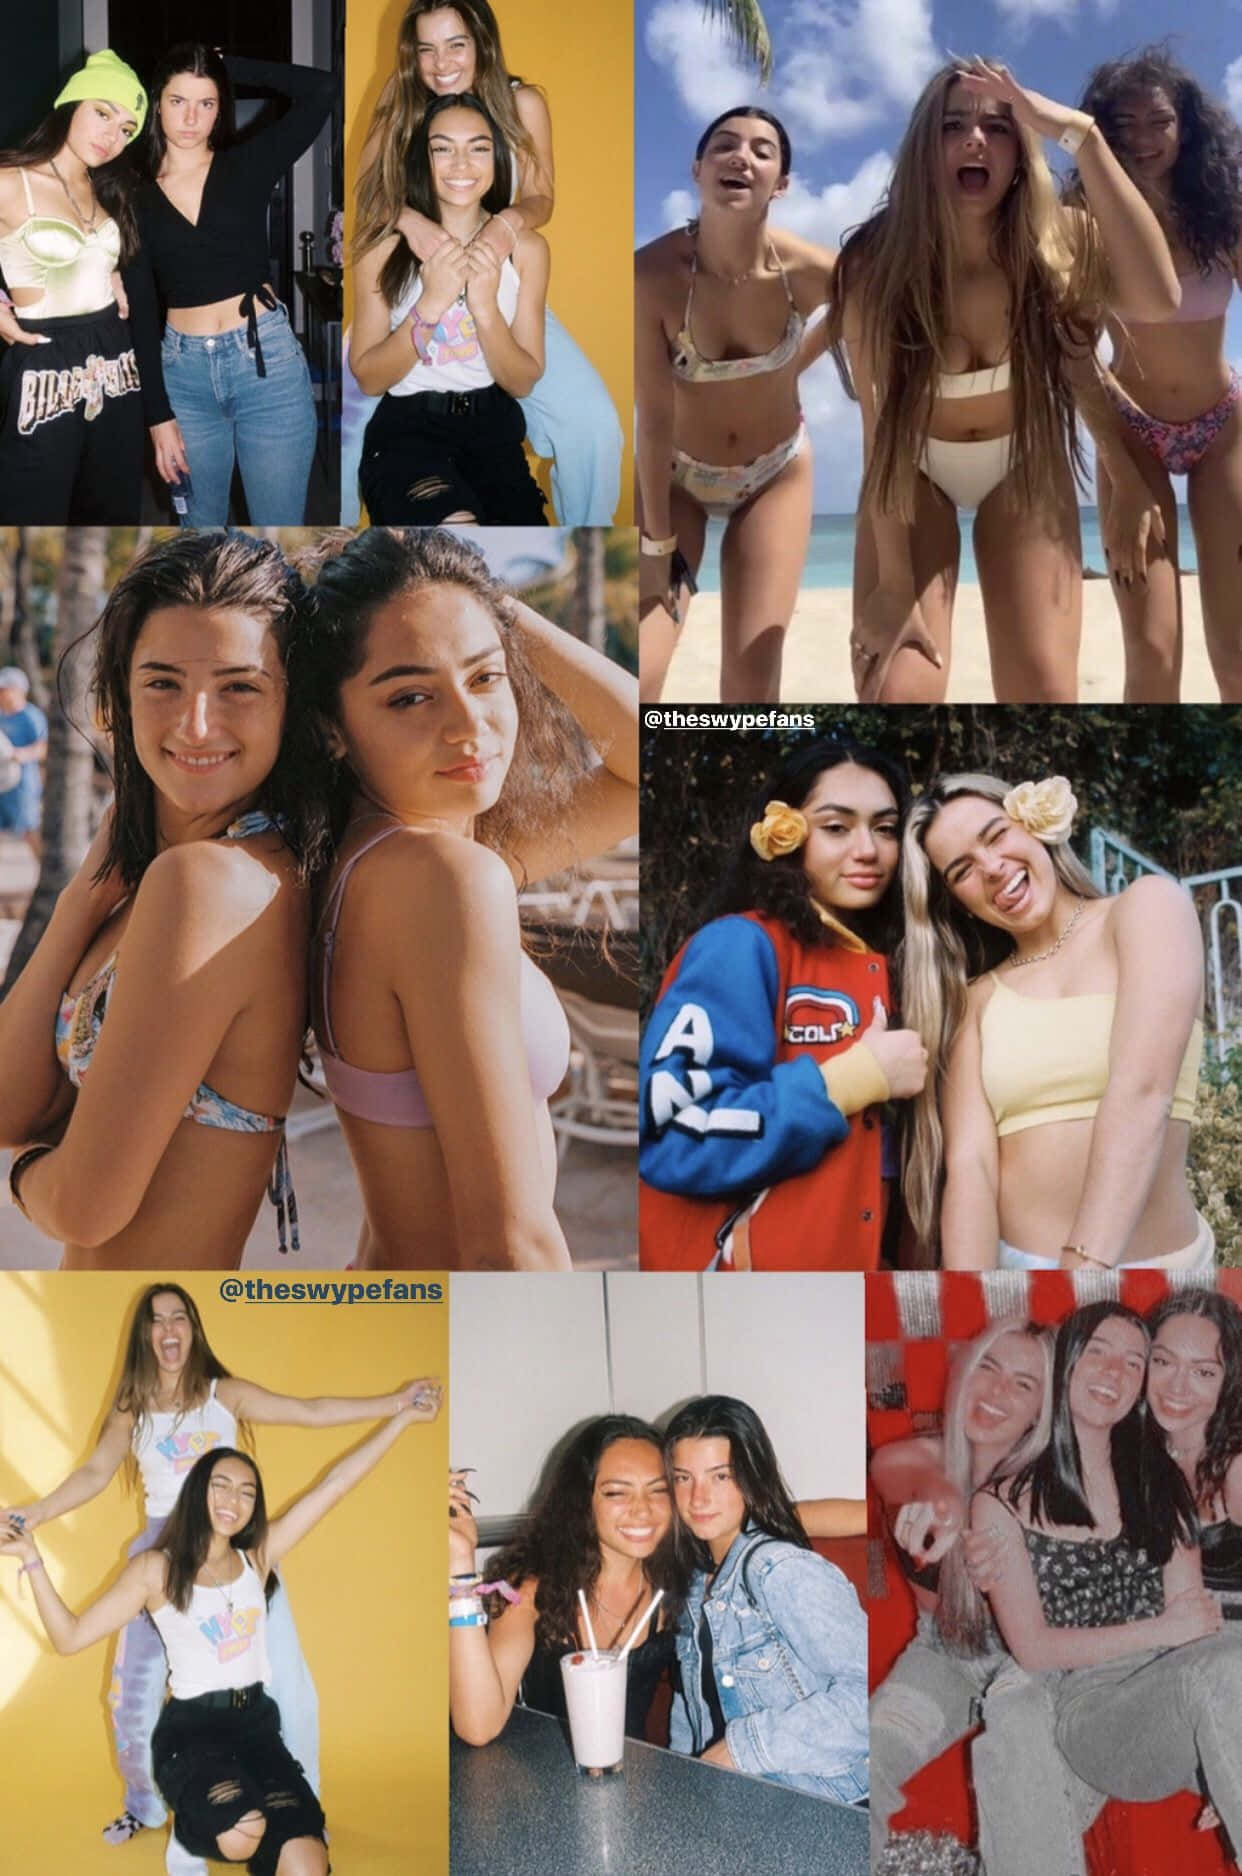 Einecollage Von Bildern Von Mädchen In Bikinis Wallpaper